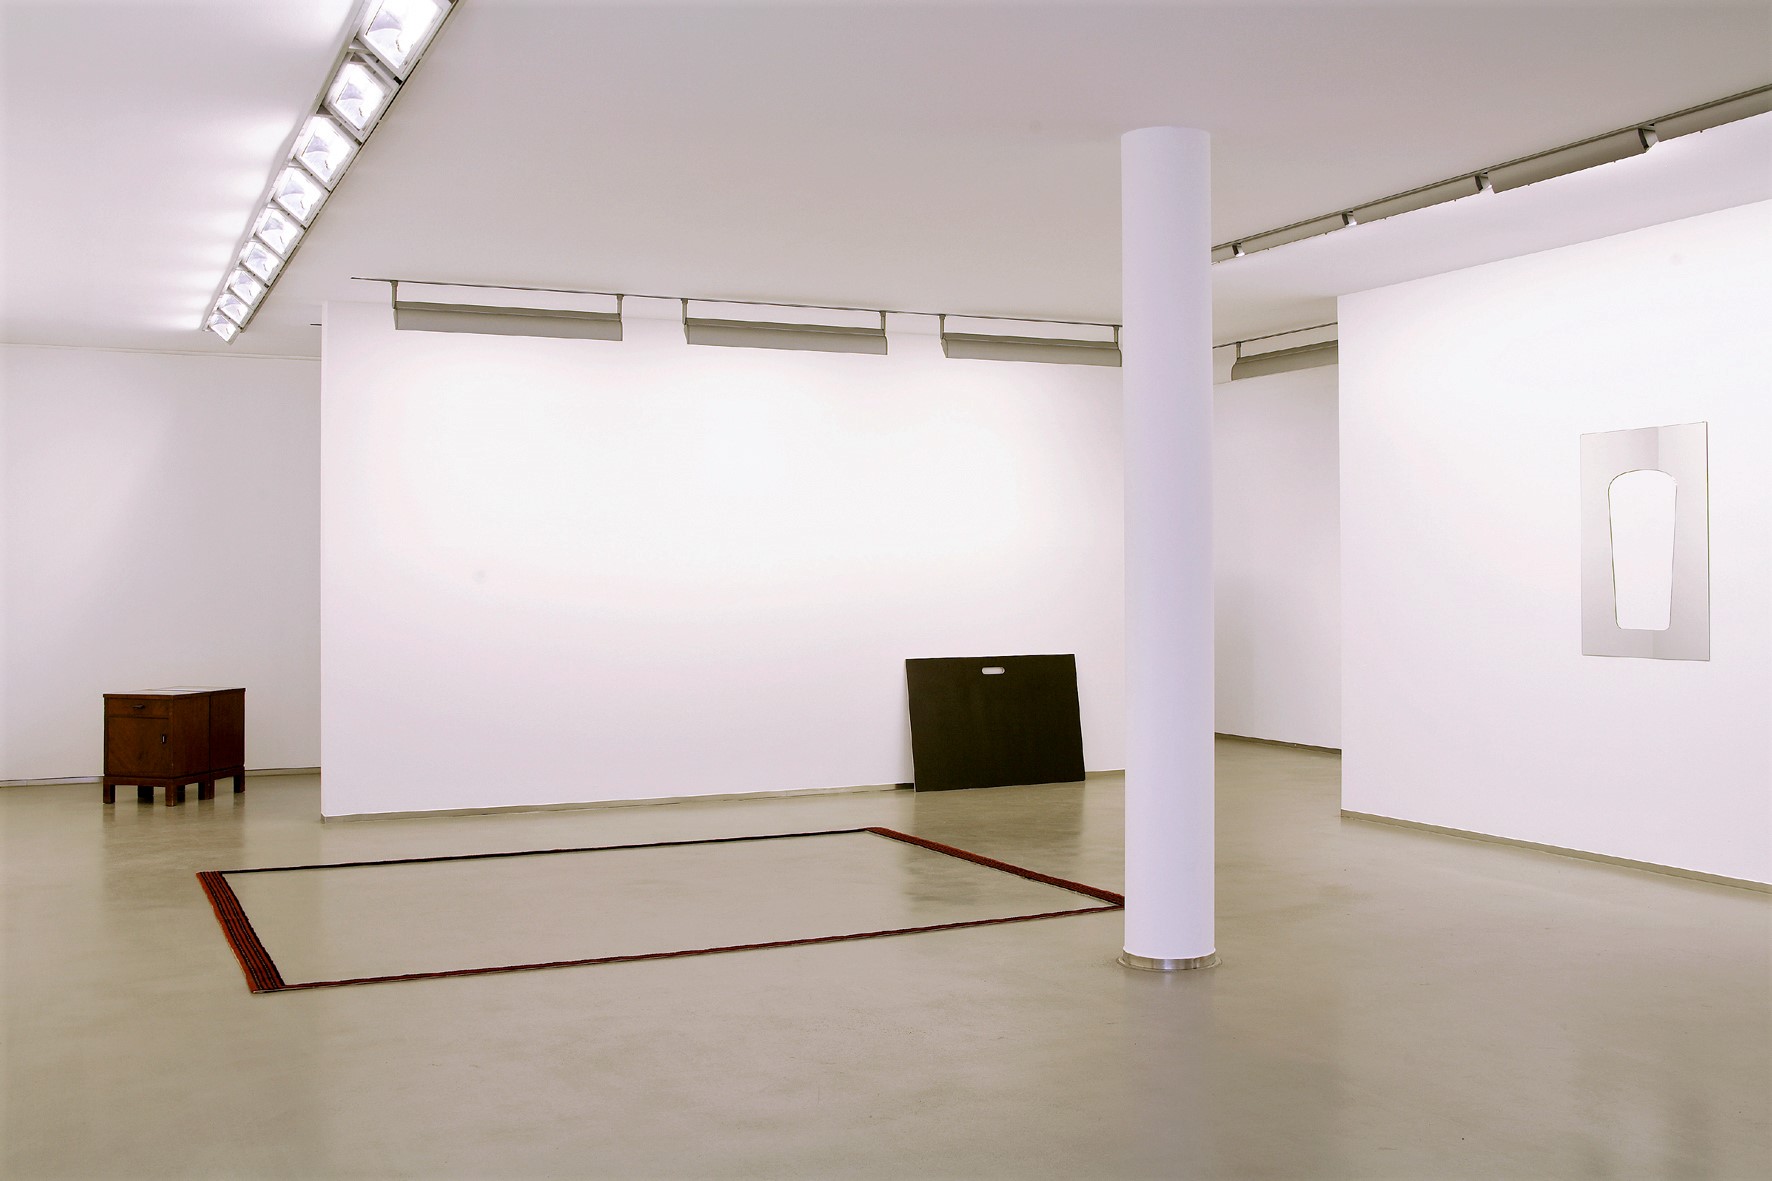 Anna Kolodziejska, Exhibition view, 2006